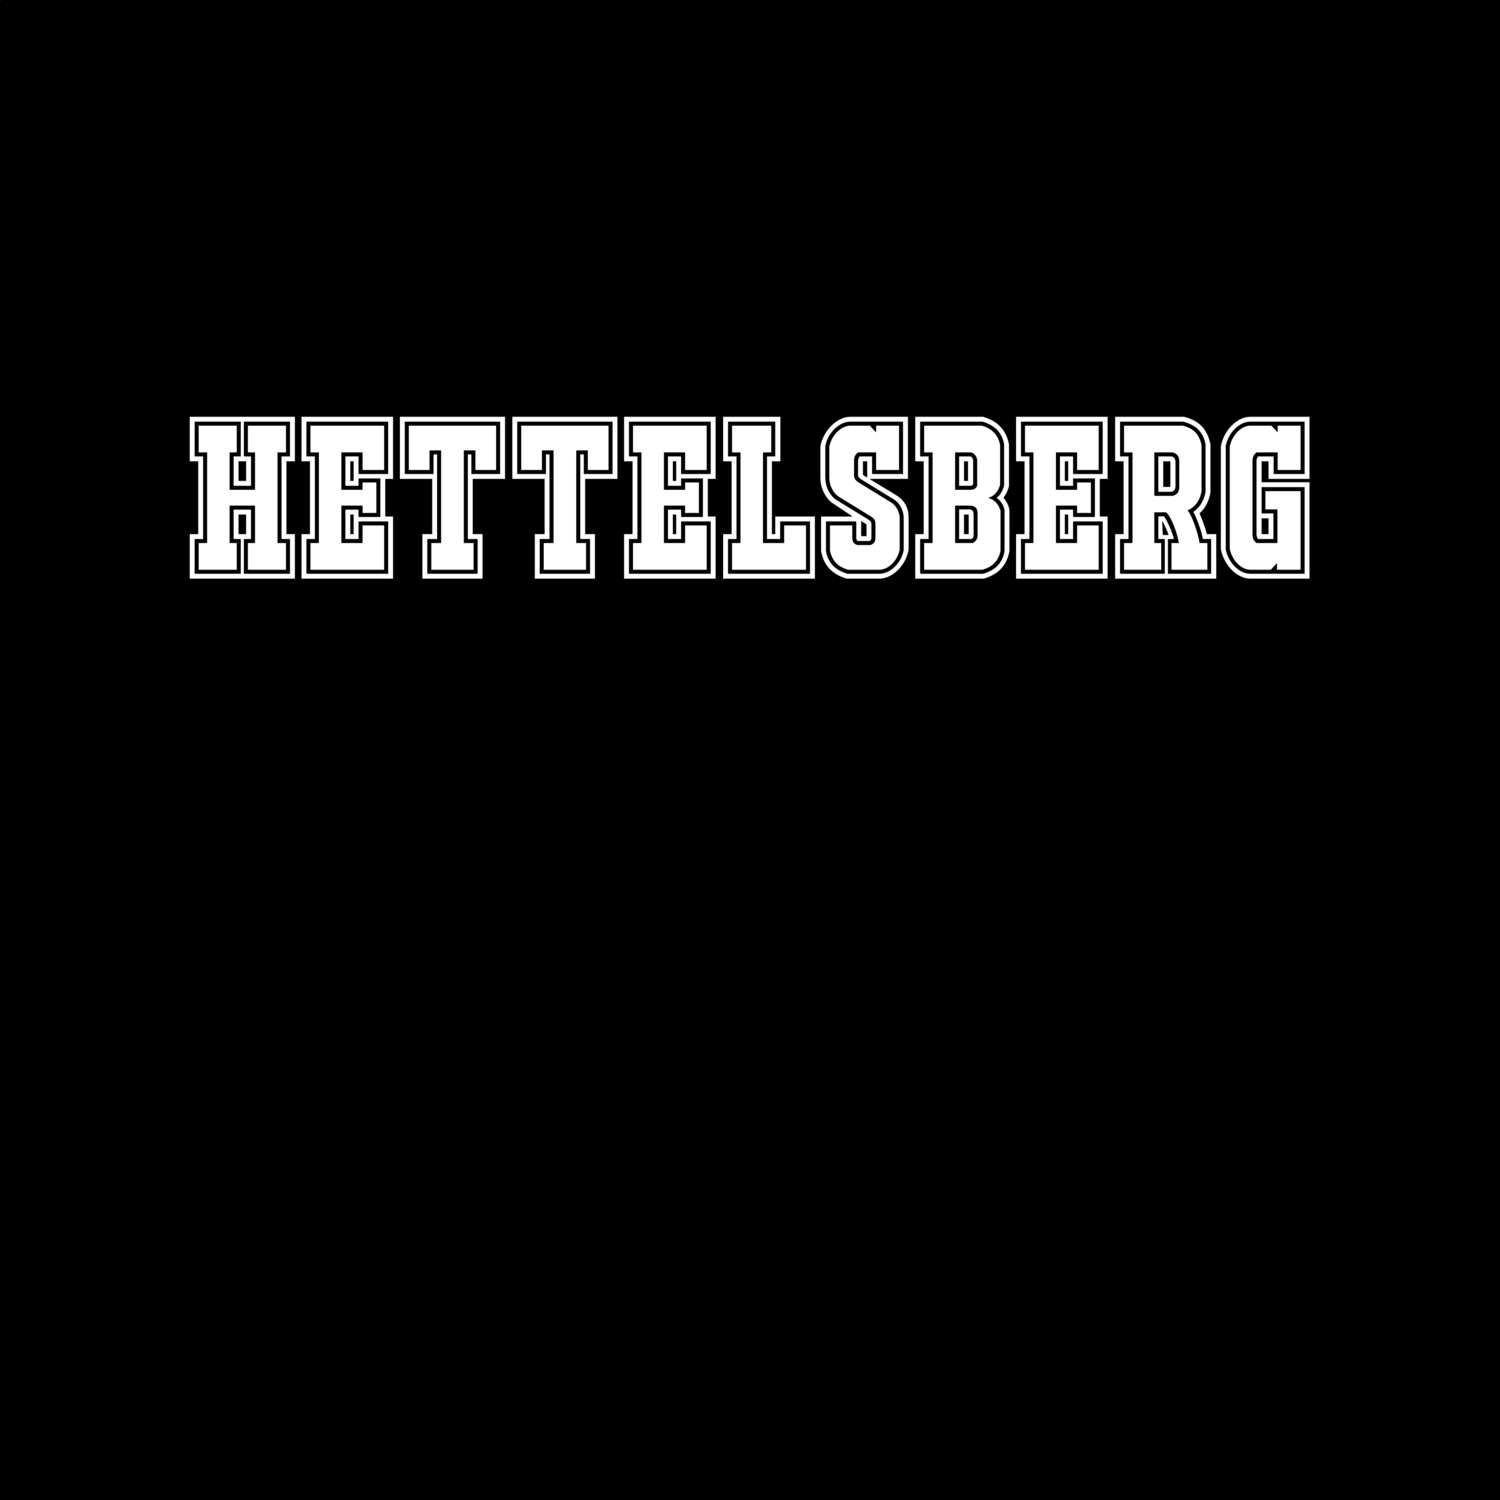 Hettelsberg T-Shirt »Classic«